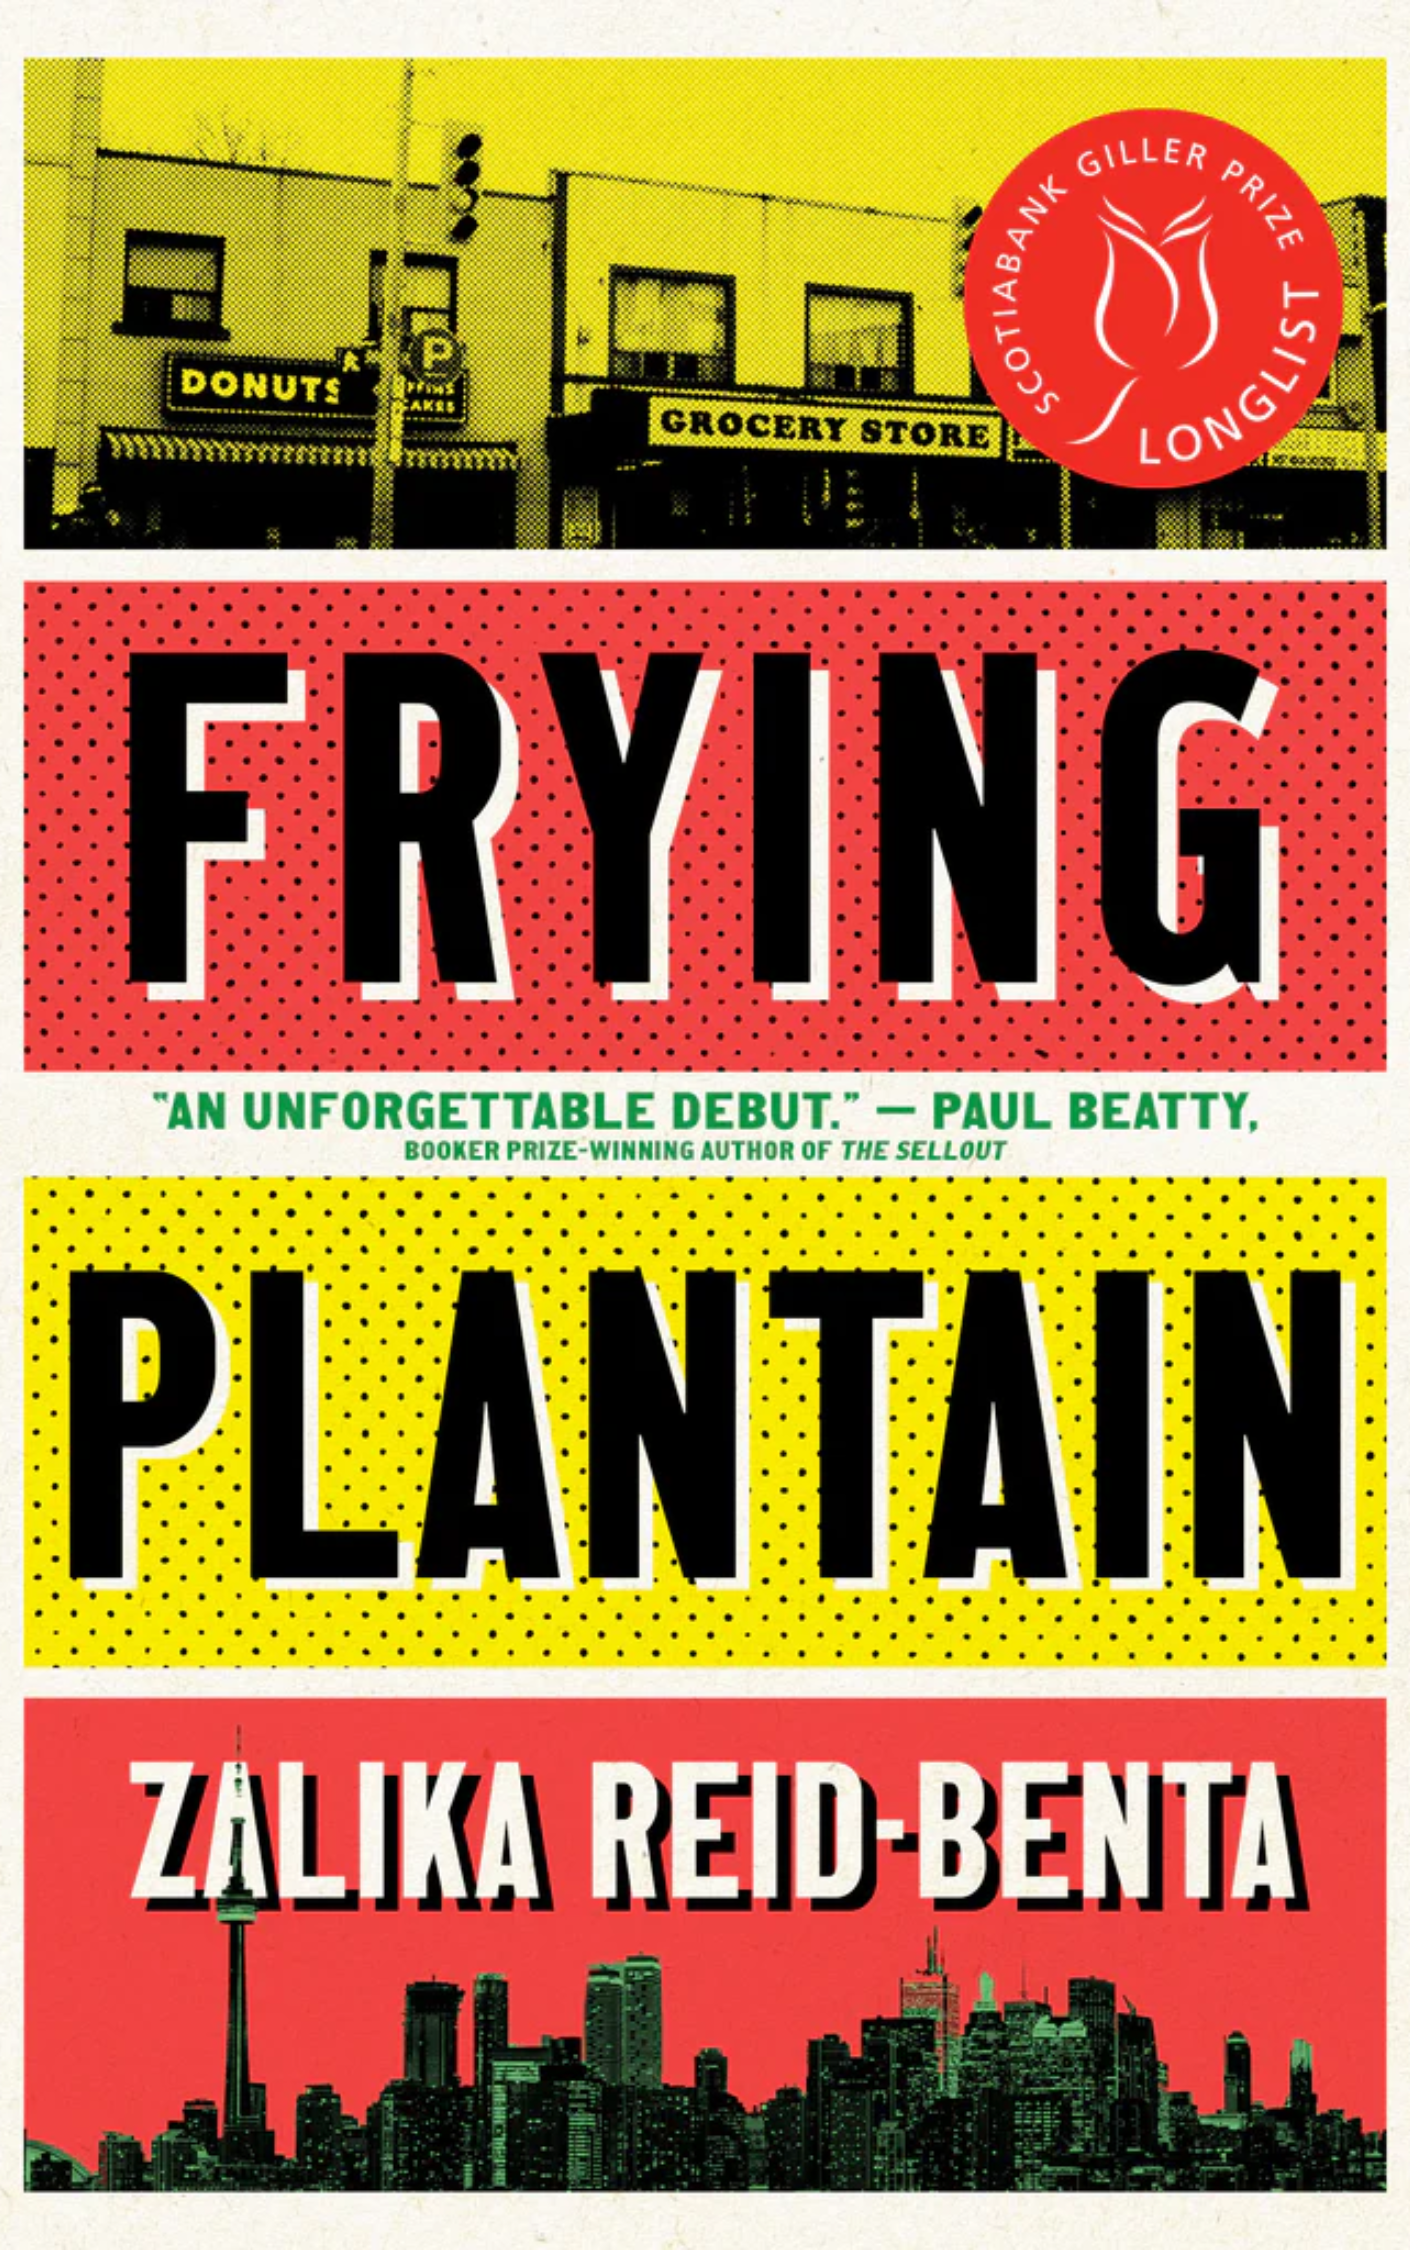 Frying Plantain by Zalika Reid Benta